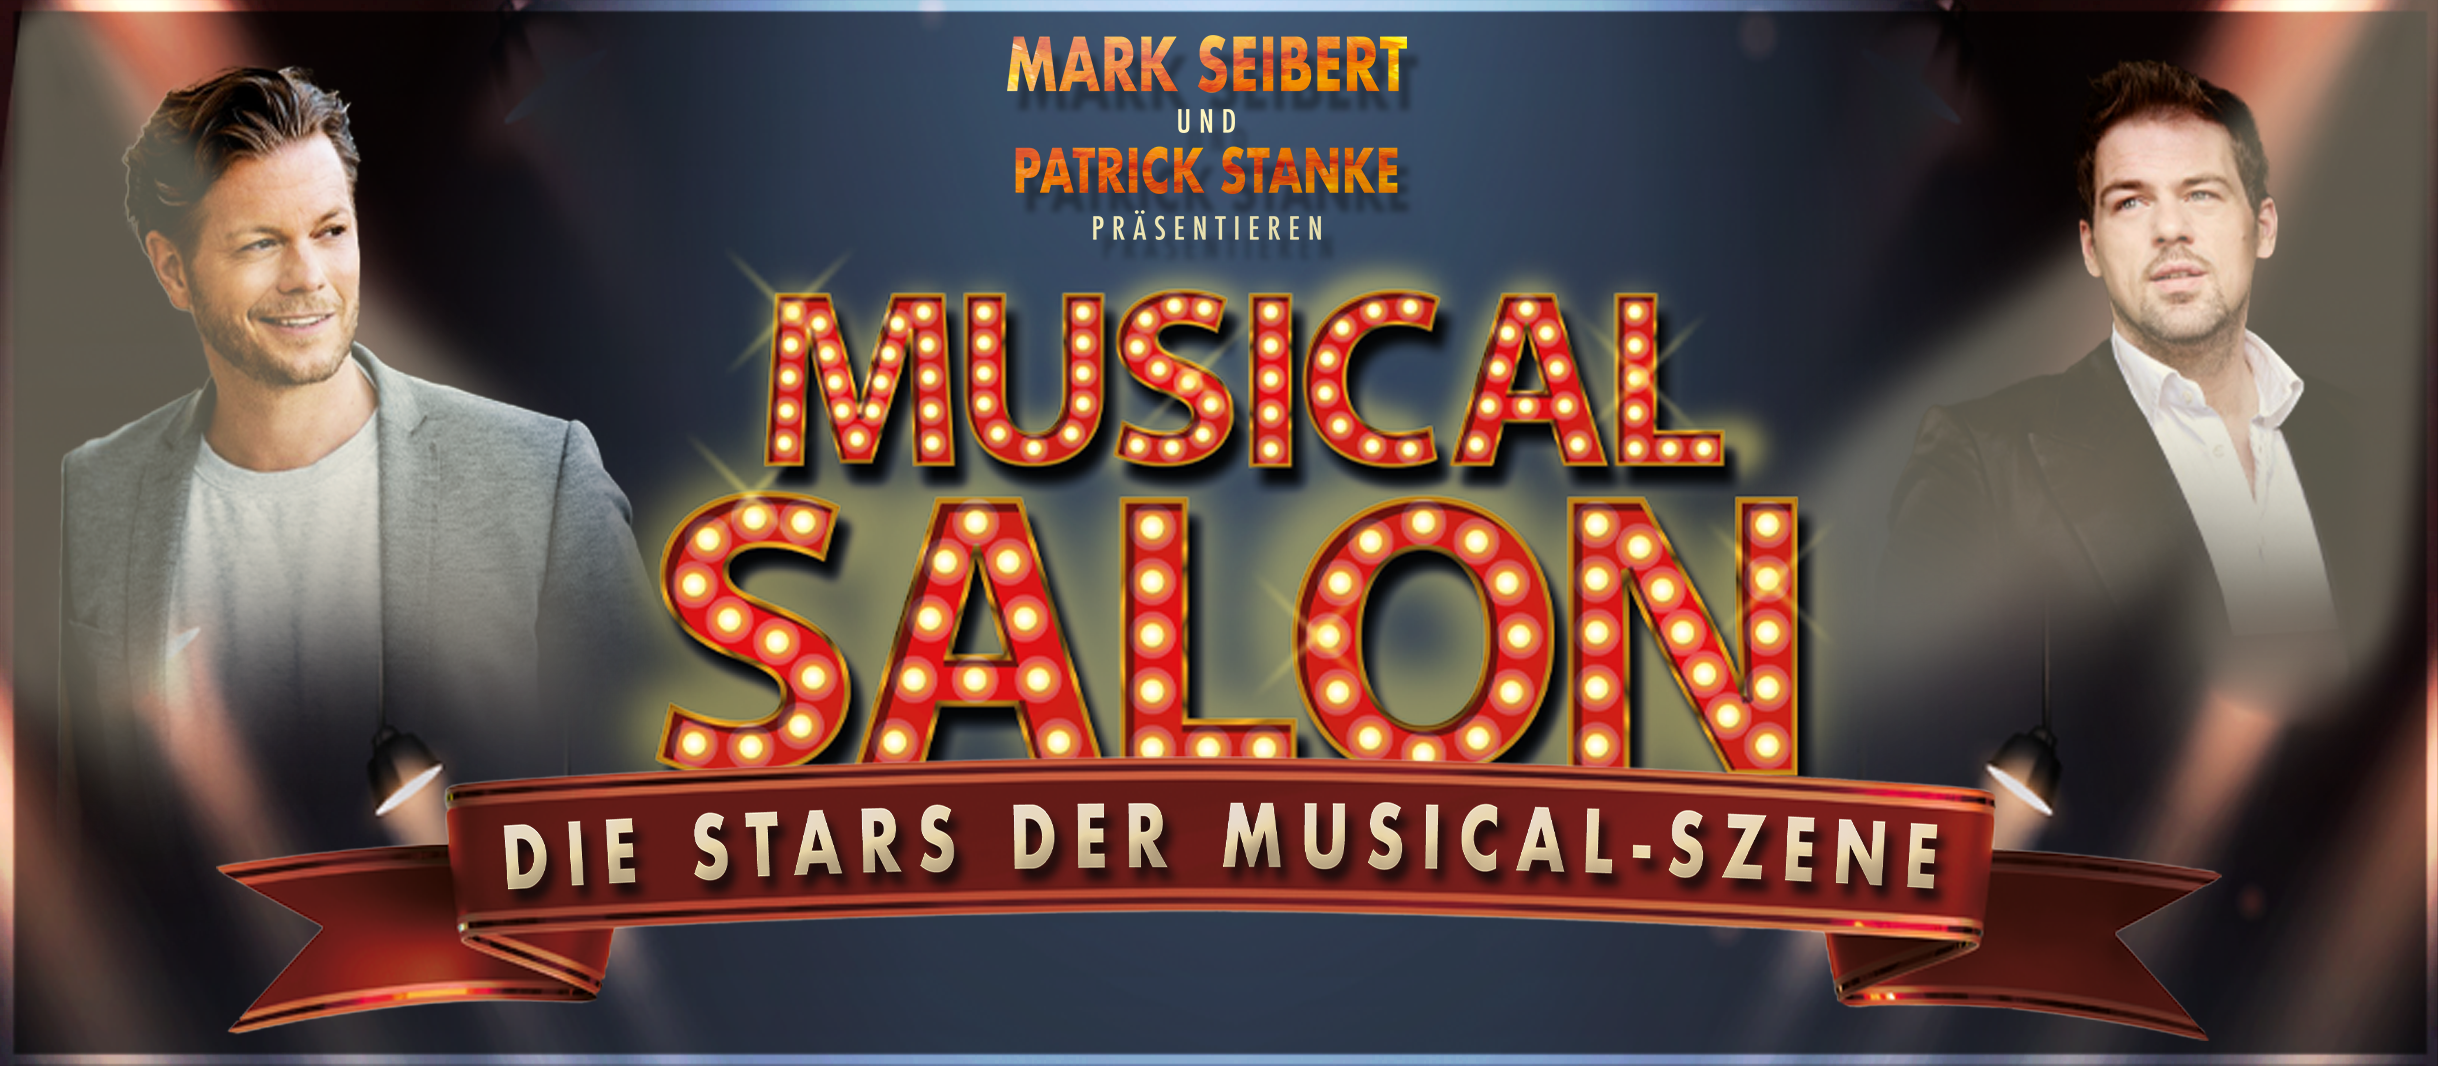 Plakat zur Konzertreihe Musical Salon in München: Bilder von Musicaldarsteller Patrick Stanke und Mark Seibert mit einem beleuchteten Slogan